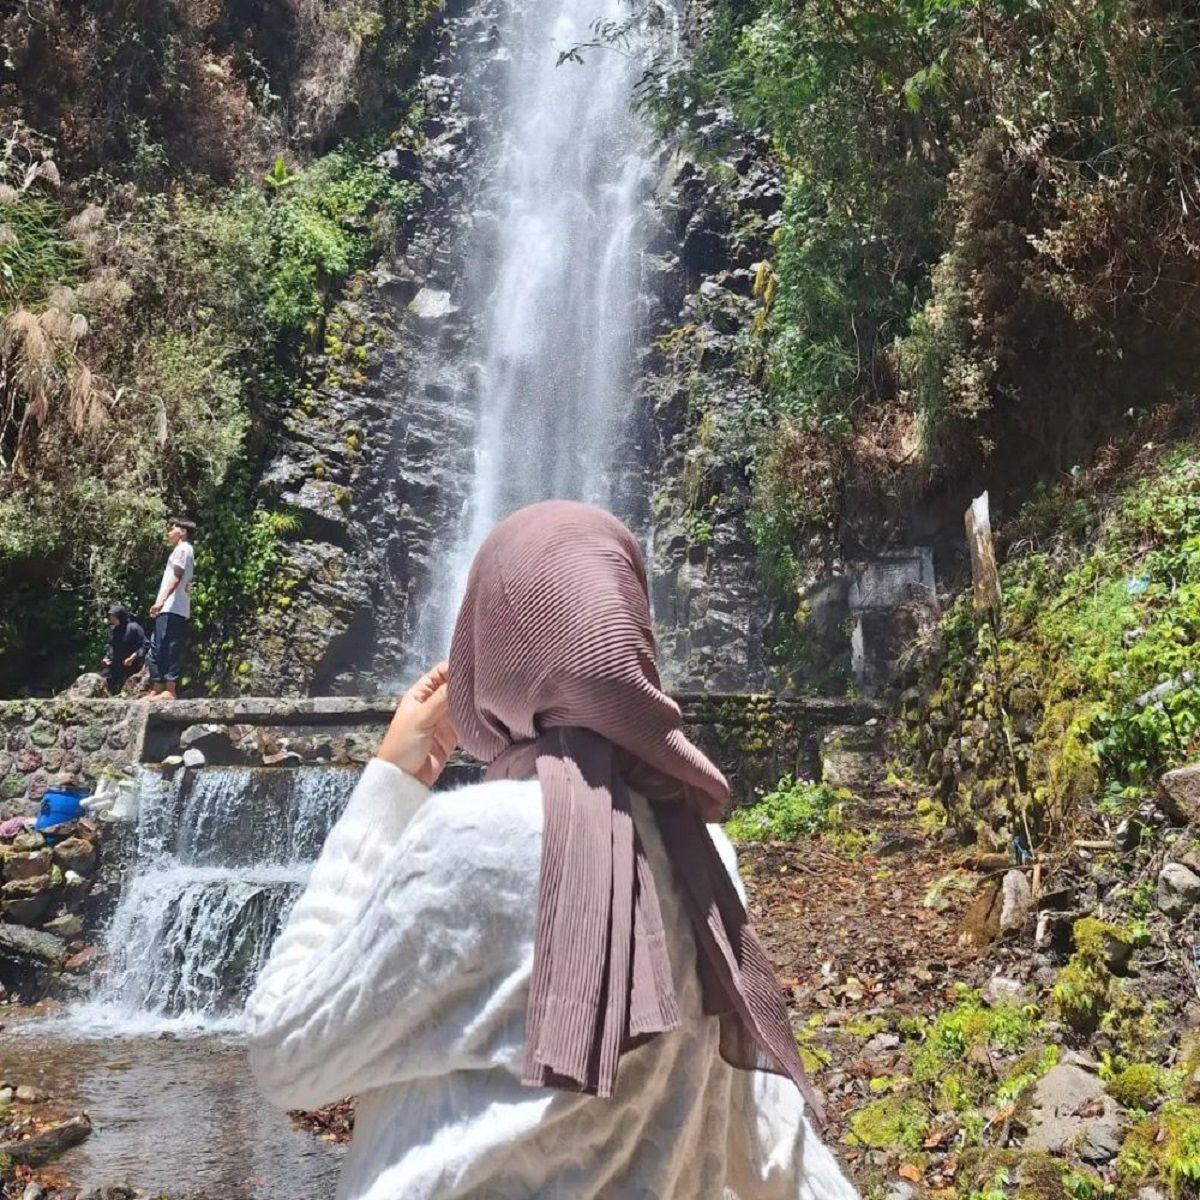 Temukan kecantikan Air Terjun Tirtosari di Telaga Sarangan, Magetan. Panduan trekking, tips berkunjung, dan nilai spiritual tempat ini.